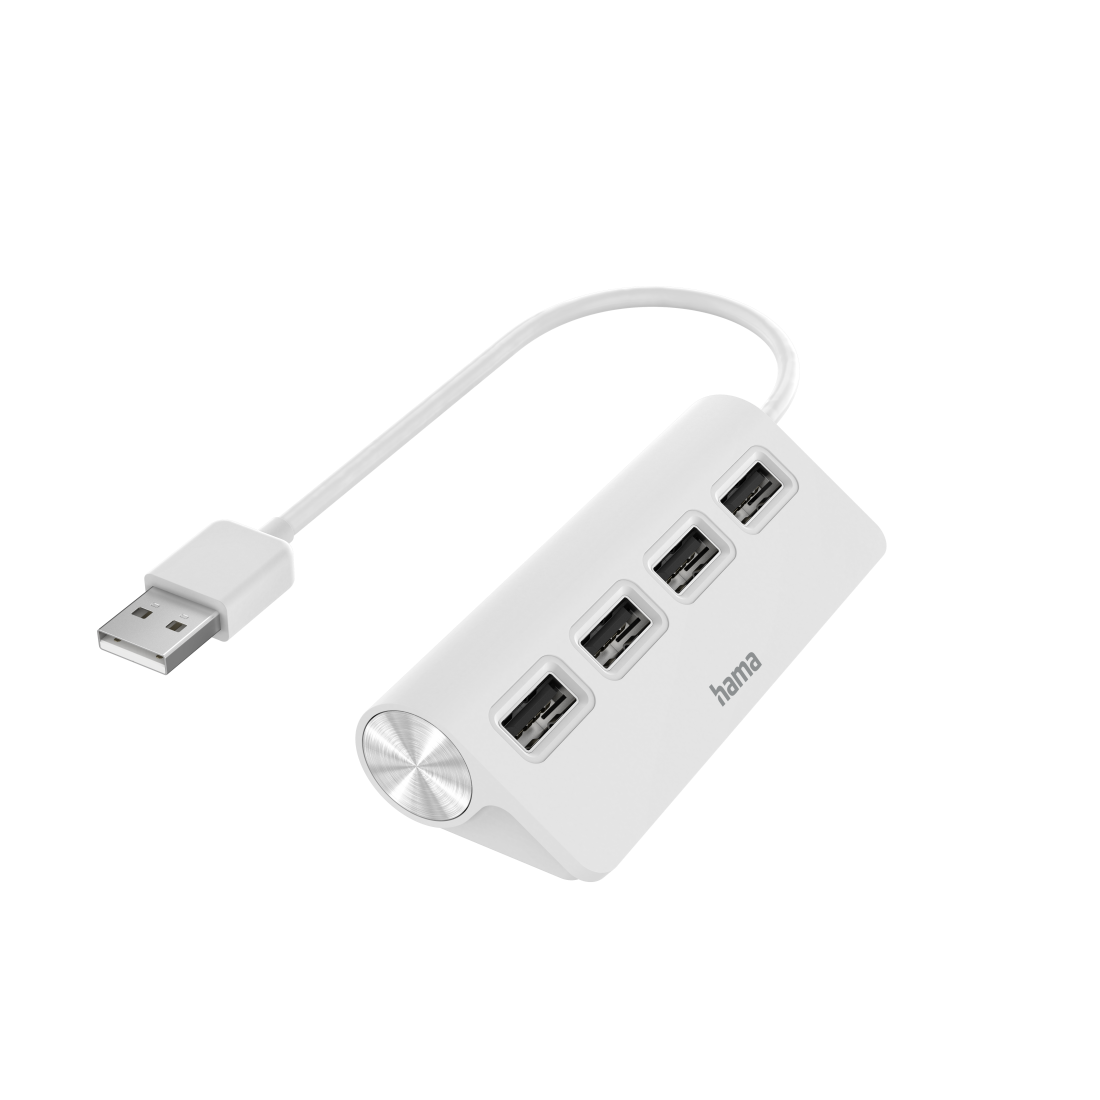 USB-Hub, 4 Ports, USB 2.0, 480 Mbit/s, Weiß | Hama